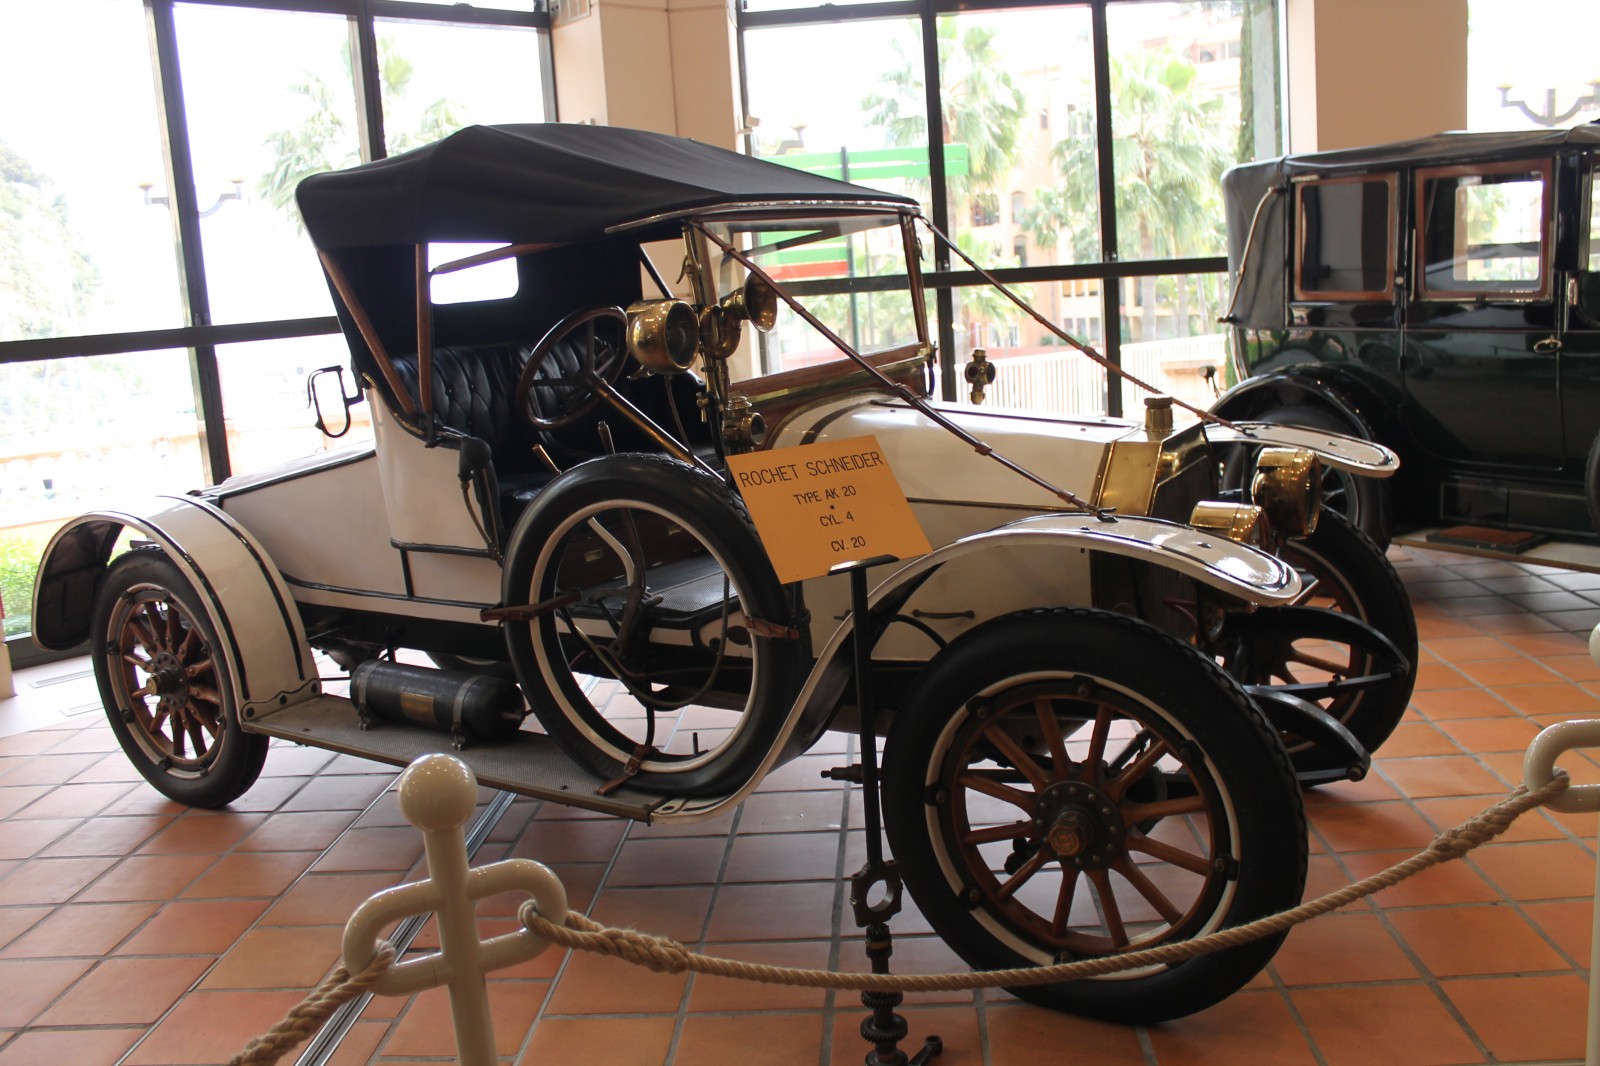 Музей старинных автомобилей принца Ренье III